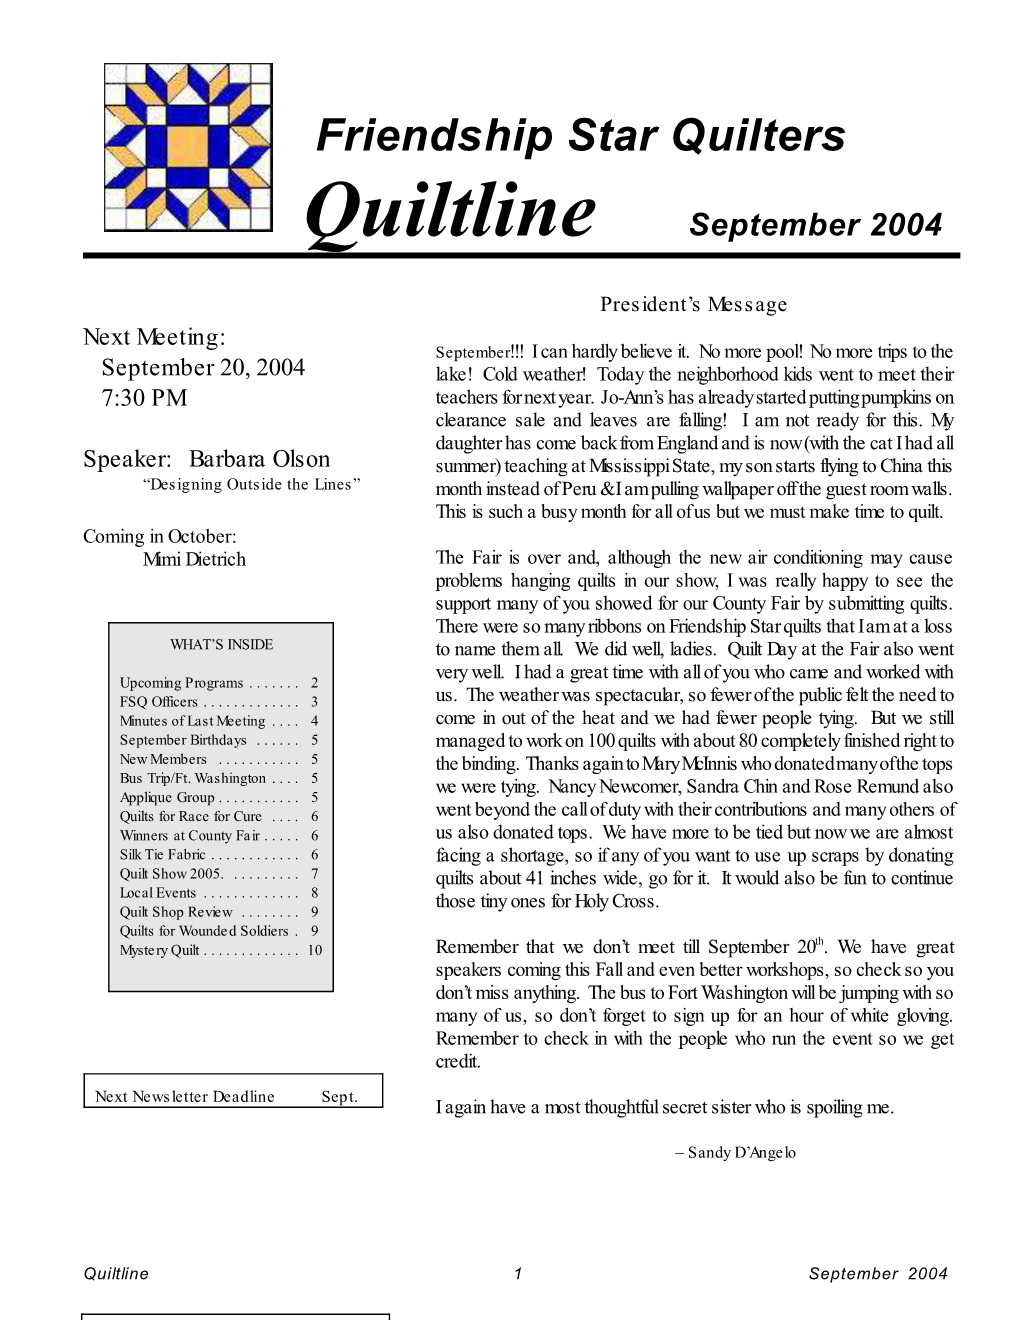 Quilt Show 2005